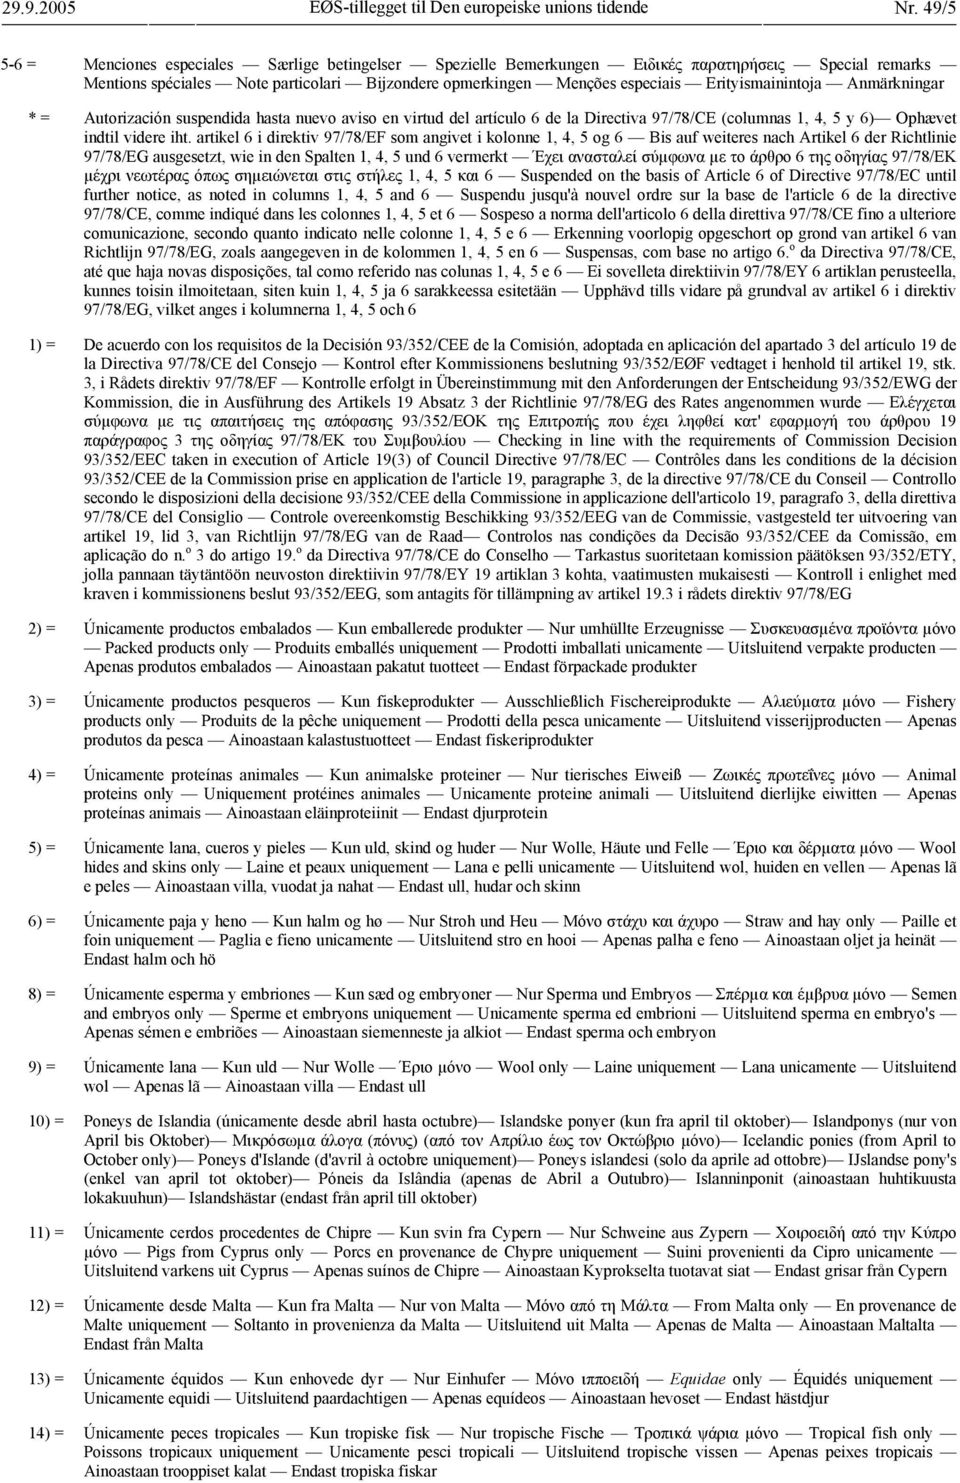 Erityismainintoja Anmärkningar * = Autorización suspendida hasta nuevo aviso en virtud del artículo 6 de la Directiva 97/78/CE (columnas 1, 4, 5 y 6) Ophævet indtil videre iht.